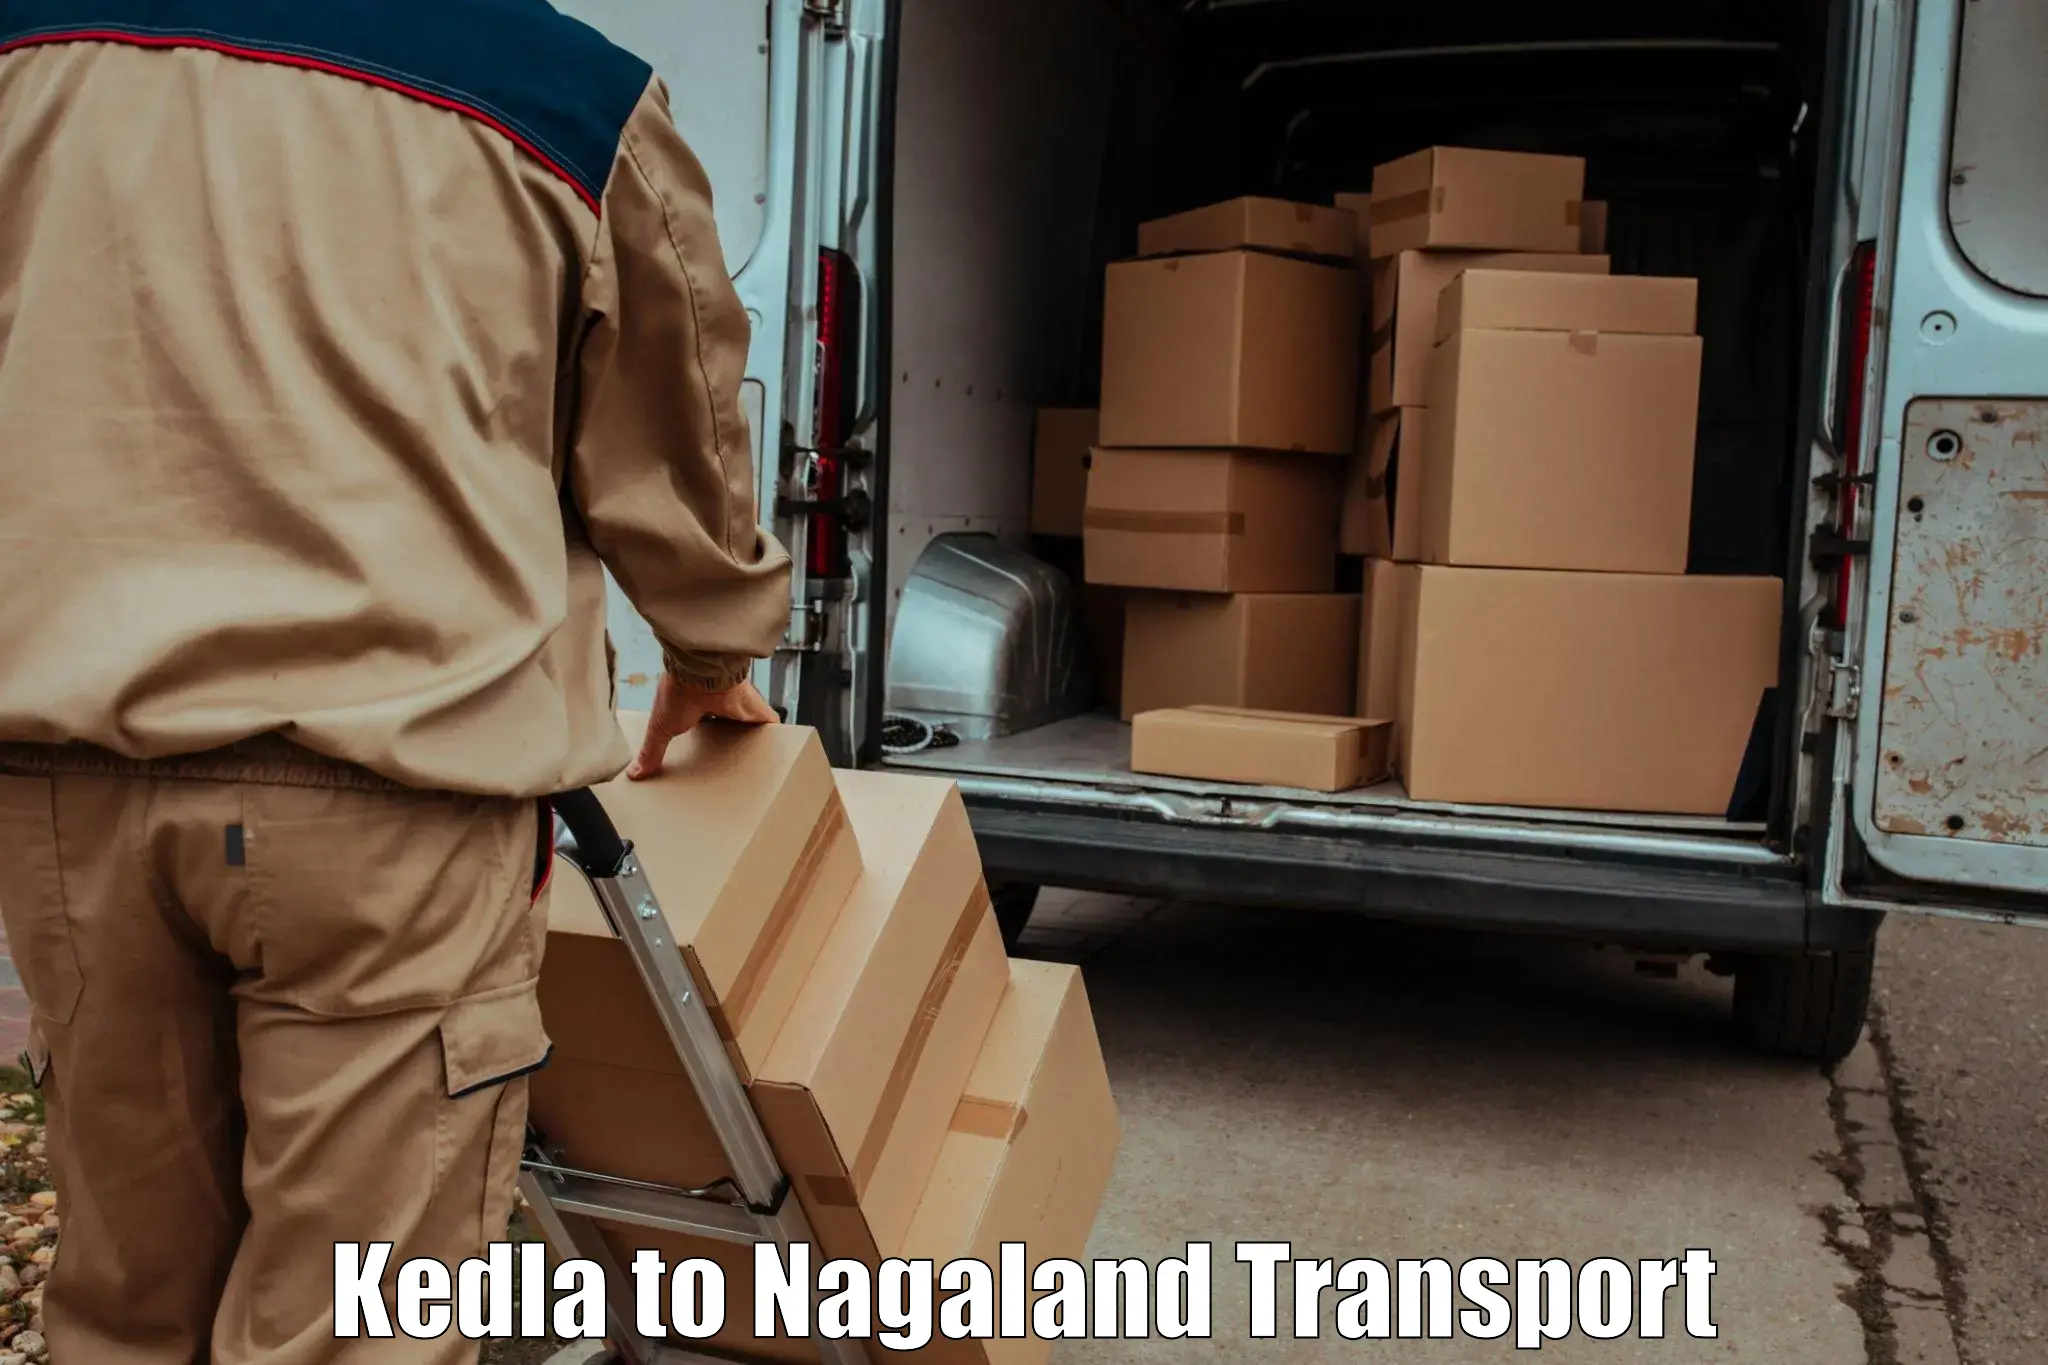 Goods transport services Kedla to Chumukedima